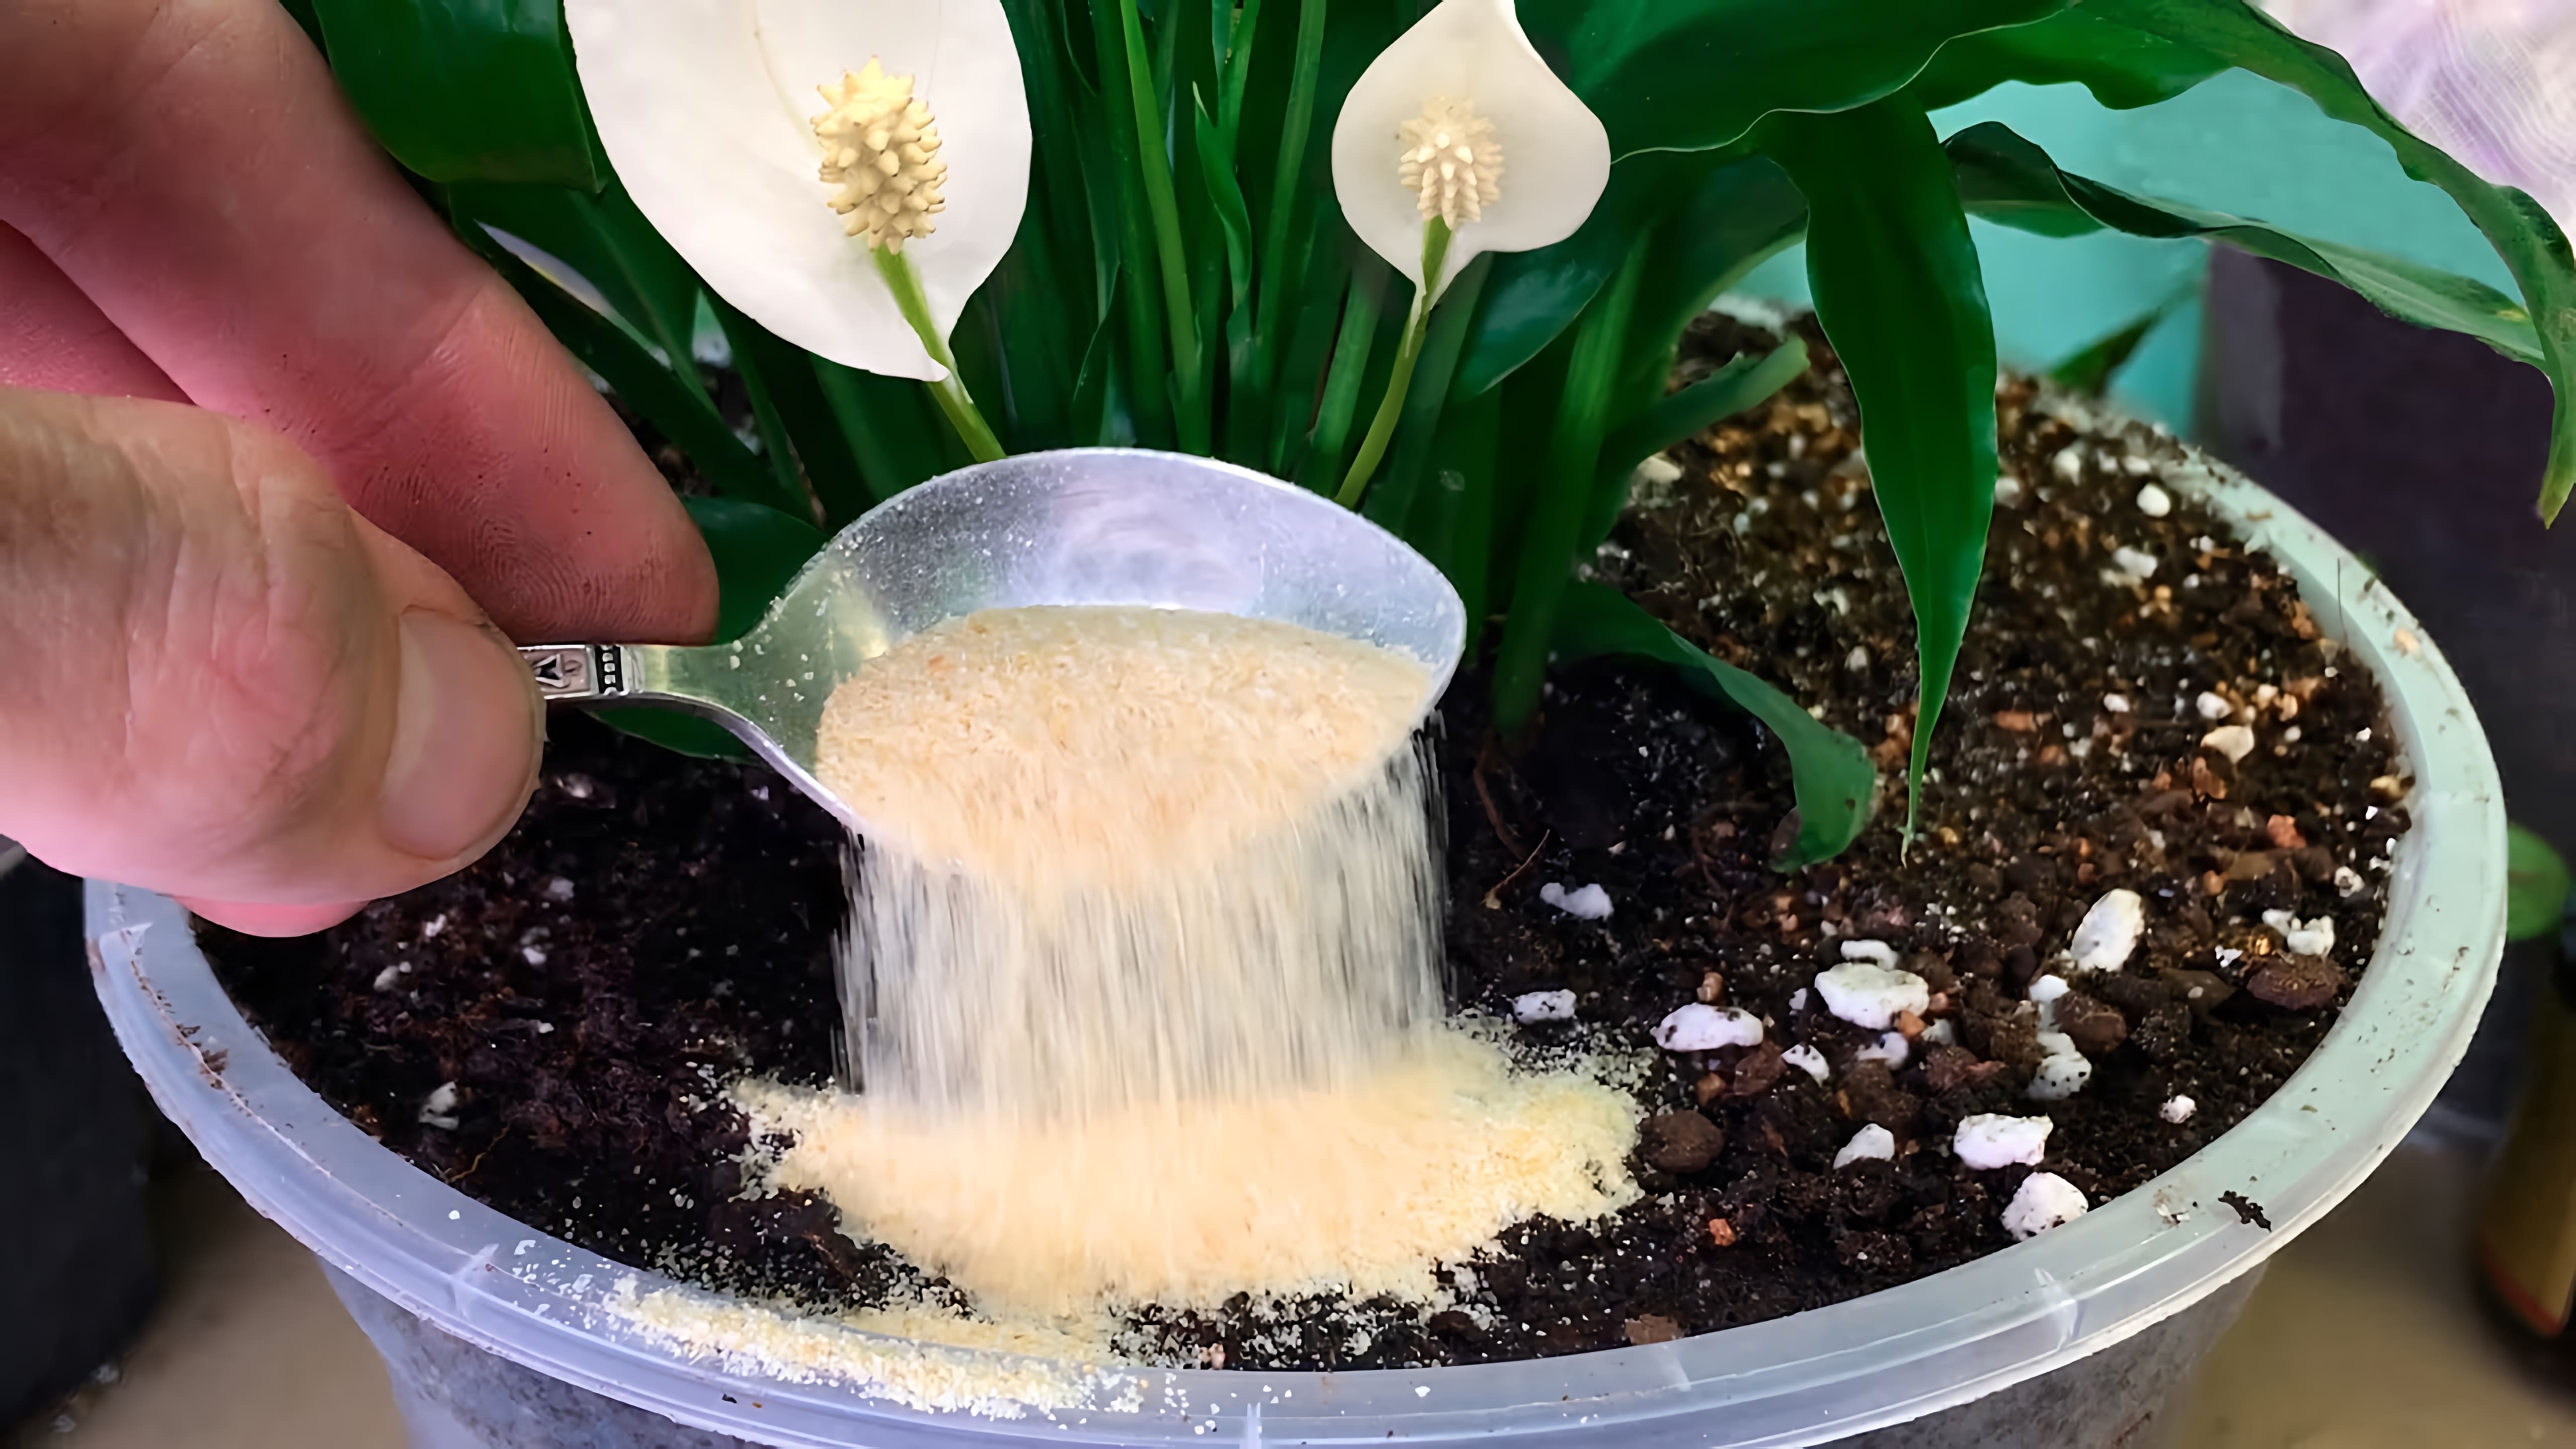 В этом видео рассказывается о простом способе подкормки комнатных растений и цветов, который поможет повысить их иммунитет, запустить рост и пышное цветение, а также избавиться от мошек